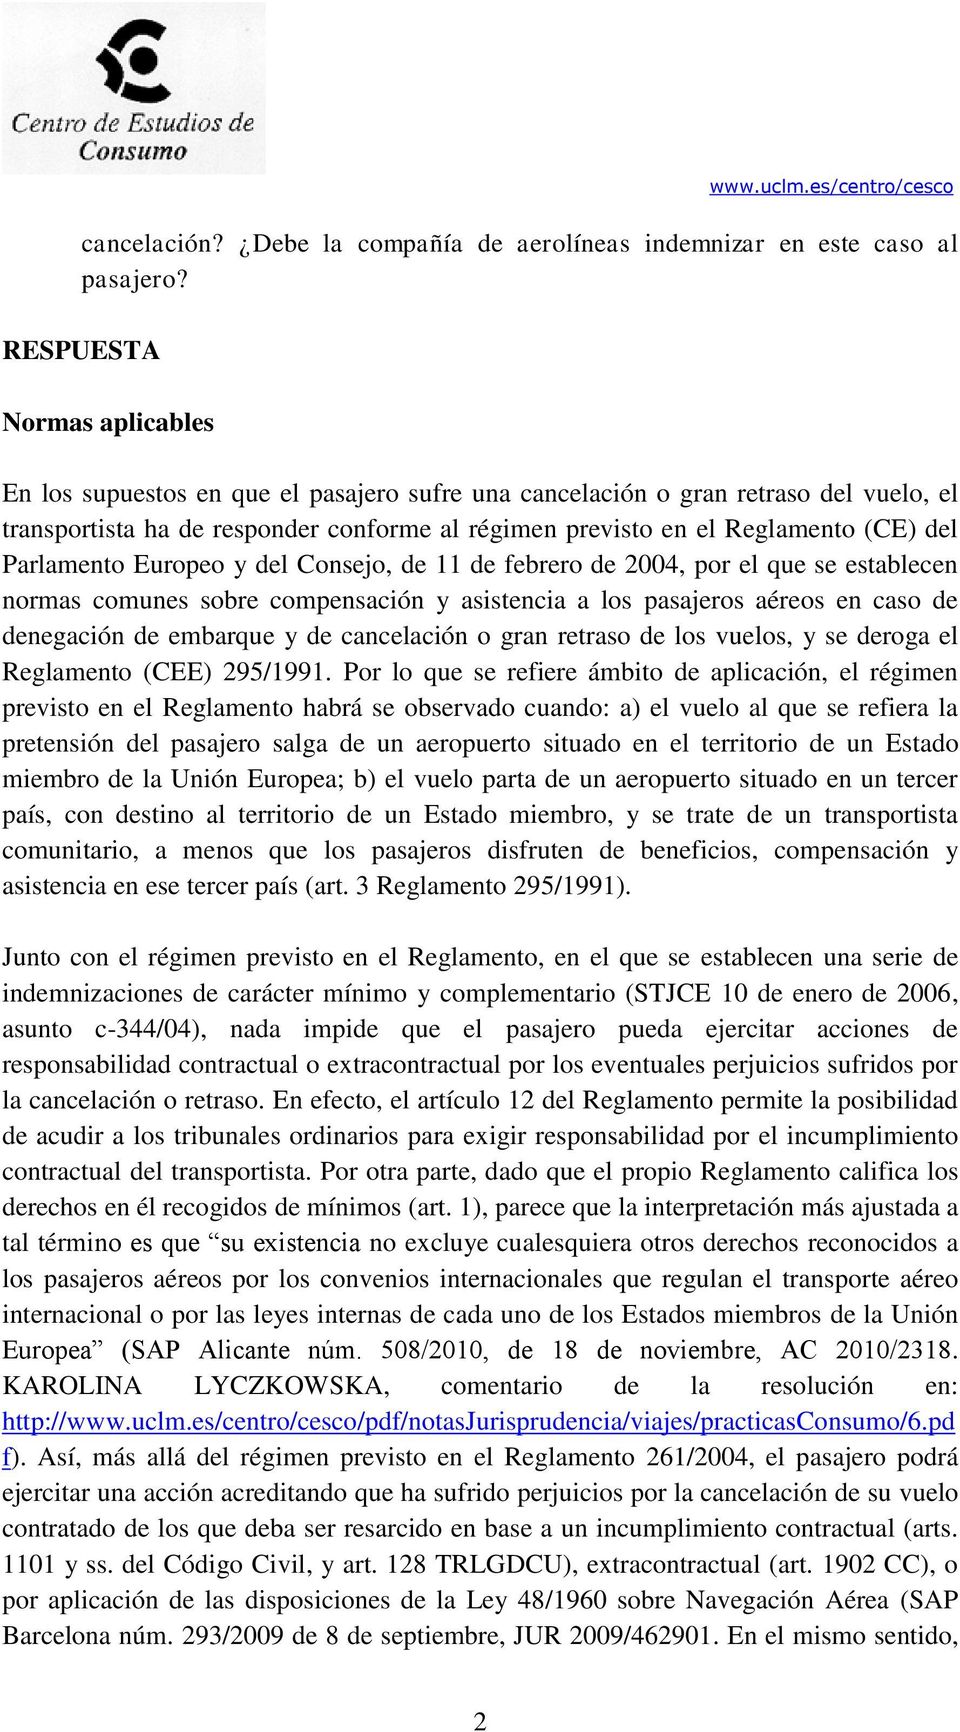 Parlamento Europeo y del Consejo, de 11 de febrero de 2004, por el que se establecen normas comunes sobre compensación y asistencia a los pasajeros aéreos en caso de denegación de embarque y de